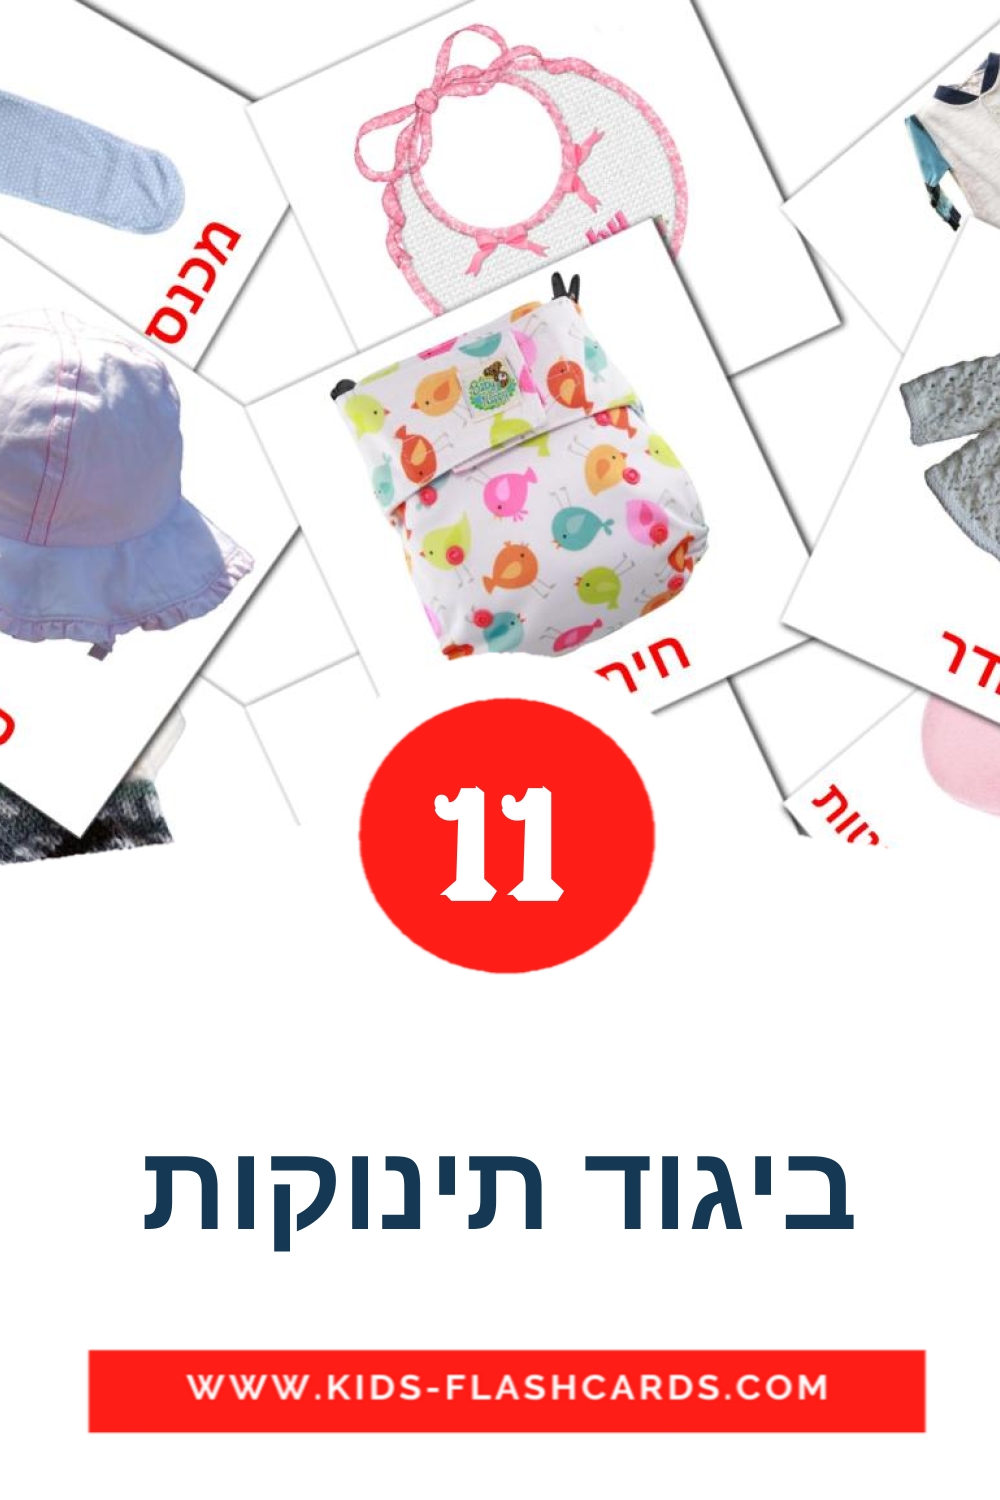 11 ביגוד תינוקות Bildkarten für den Kindergarten auf Hebräisch